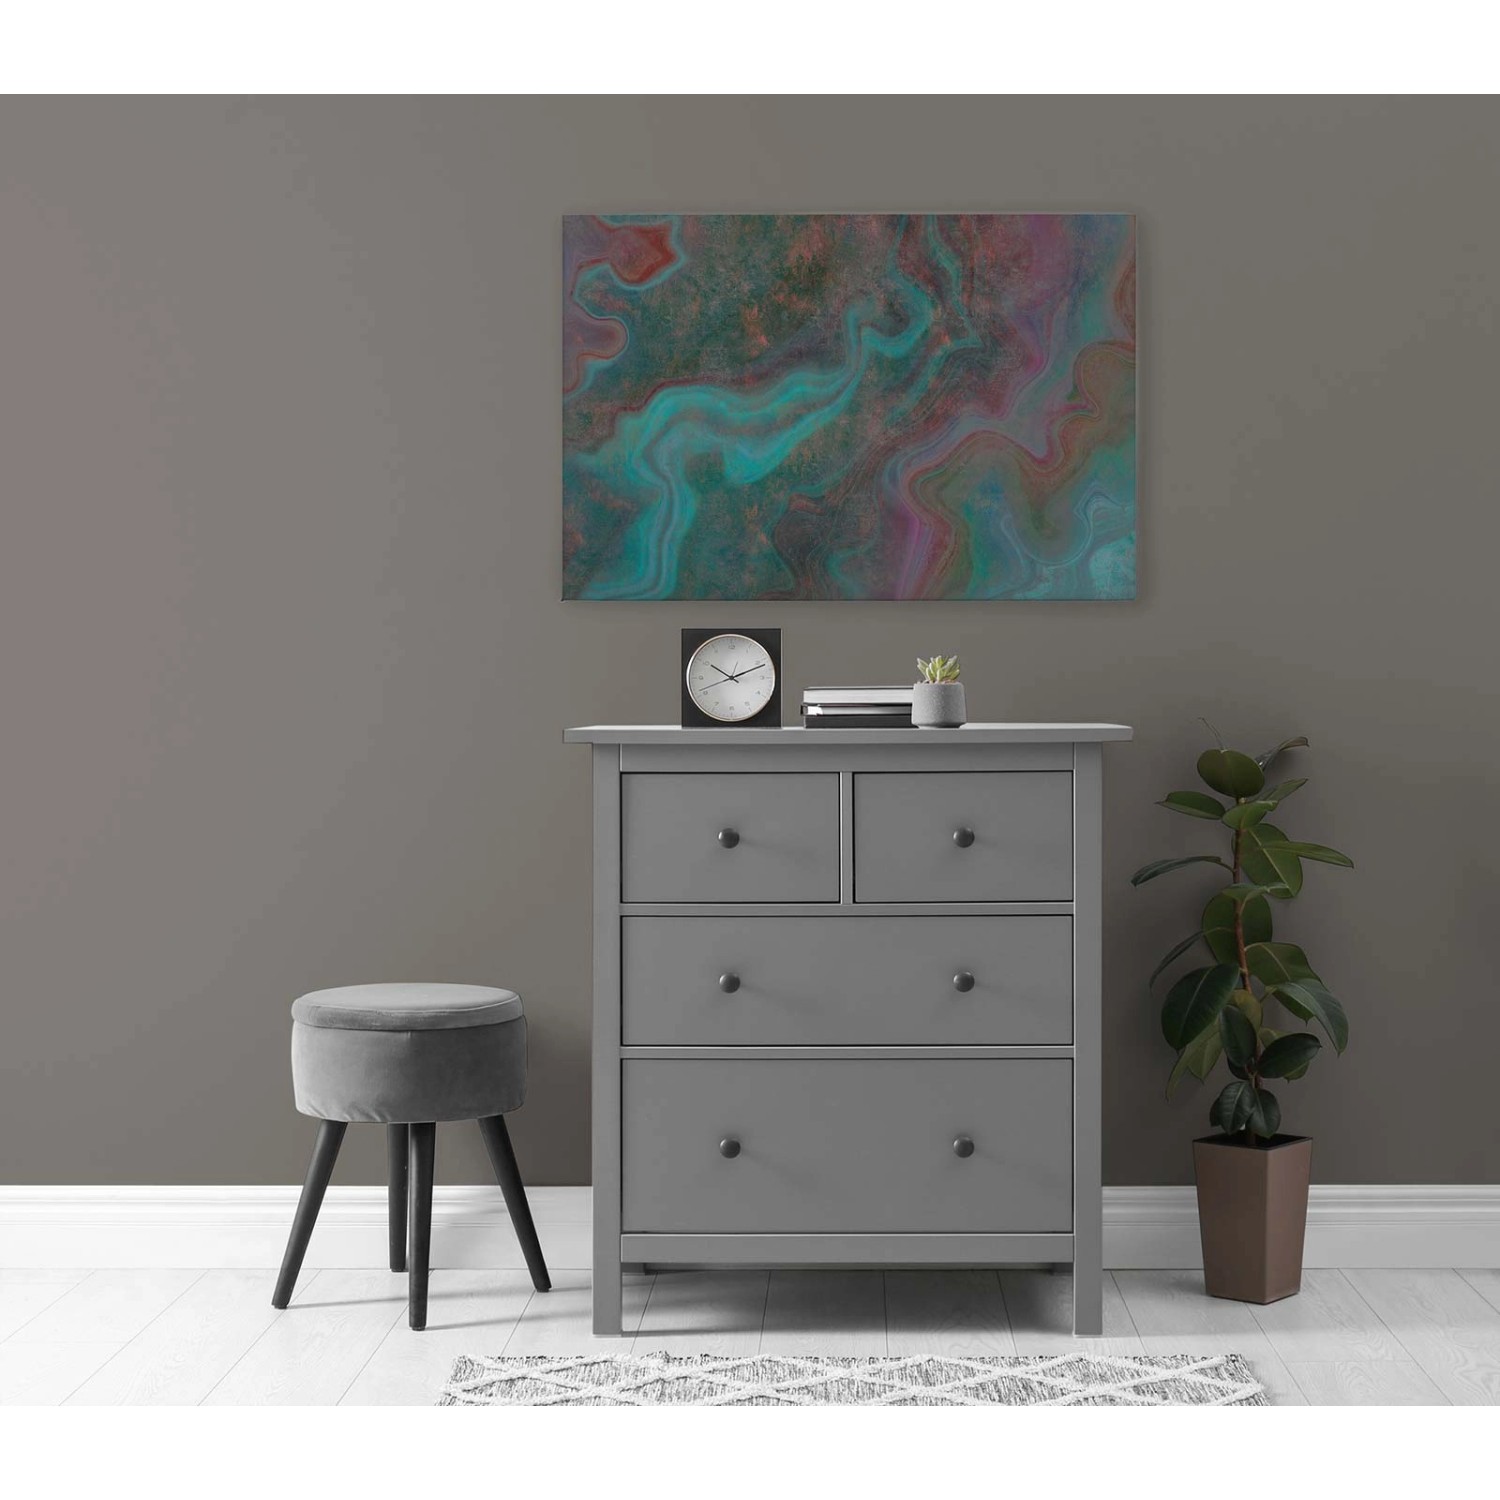 Bricoflor Bilder Mit Farbverlauf Bunt Deko Wandbild In Marmor Optik Ausgefallen Leinwandbild In 120 X 80 Cm Für Wohnzimm